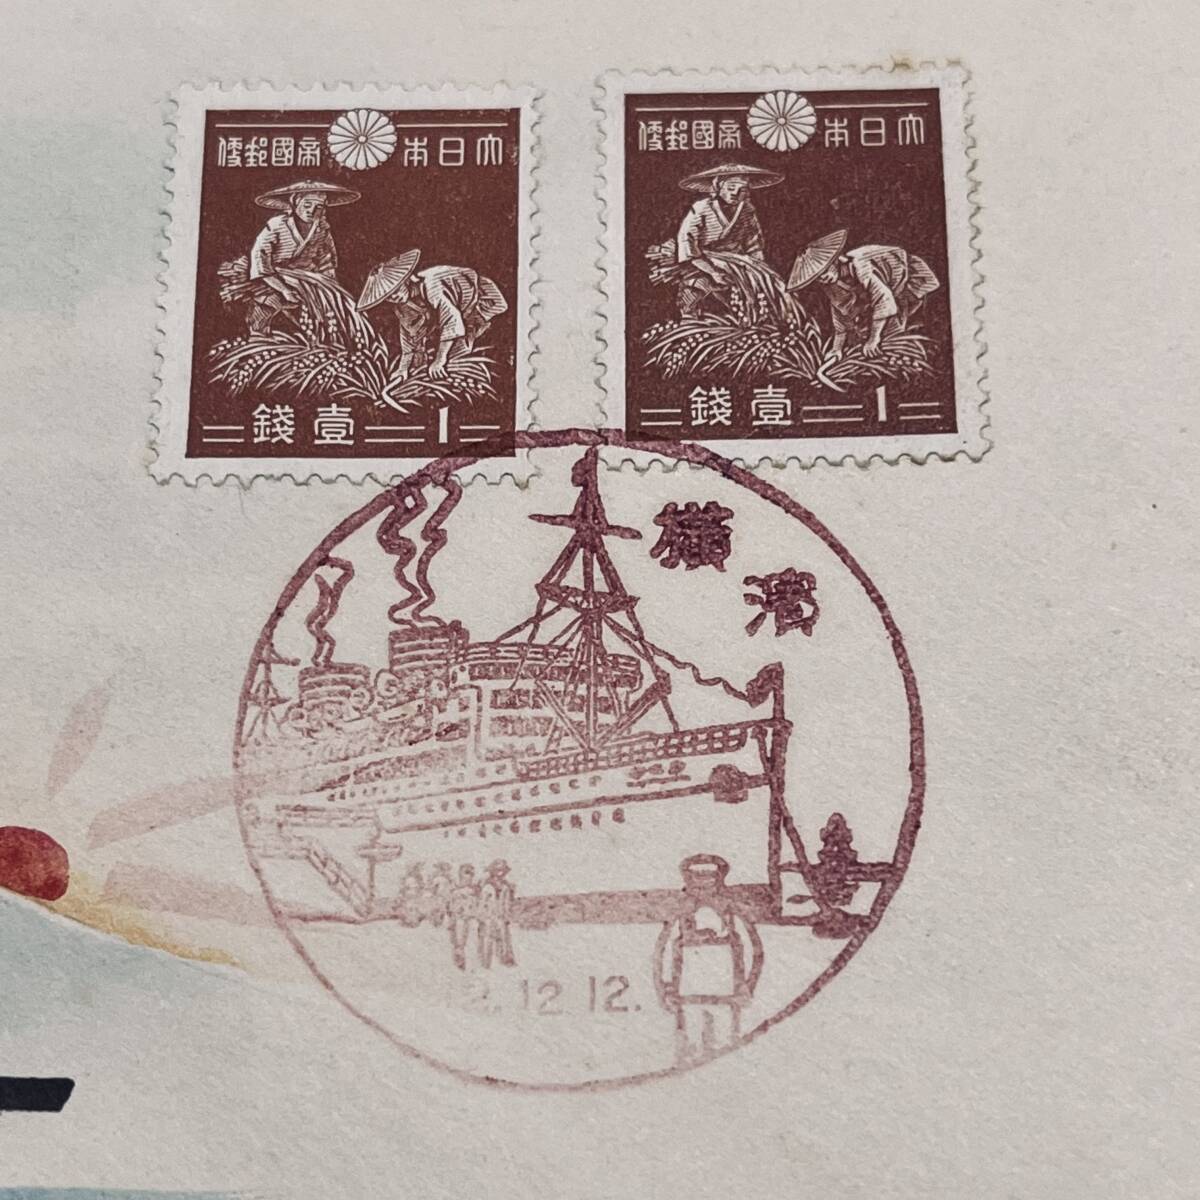  Karl * Lewis автограф один следующий марки эпохи Showa не первый день 12 год 12 месяц 12 день . печать ..1 sen пейзаж печать Yokohama Lewis [ гора Фудзи . первый день. . map ] адрес нет 